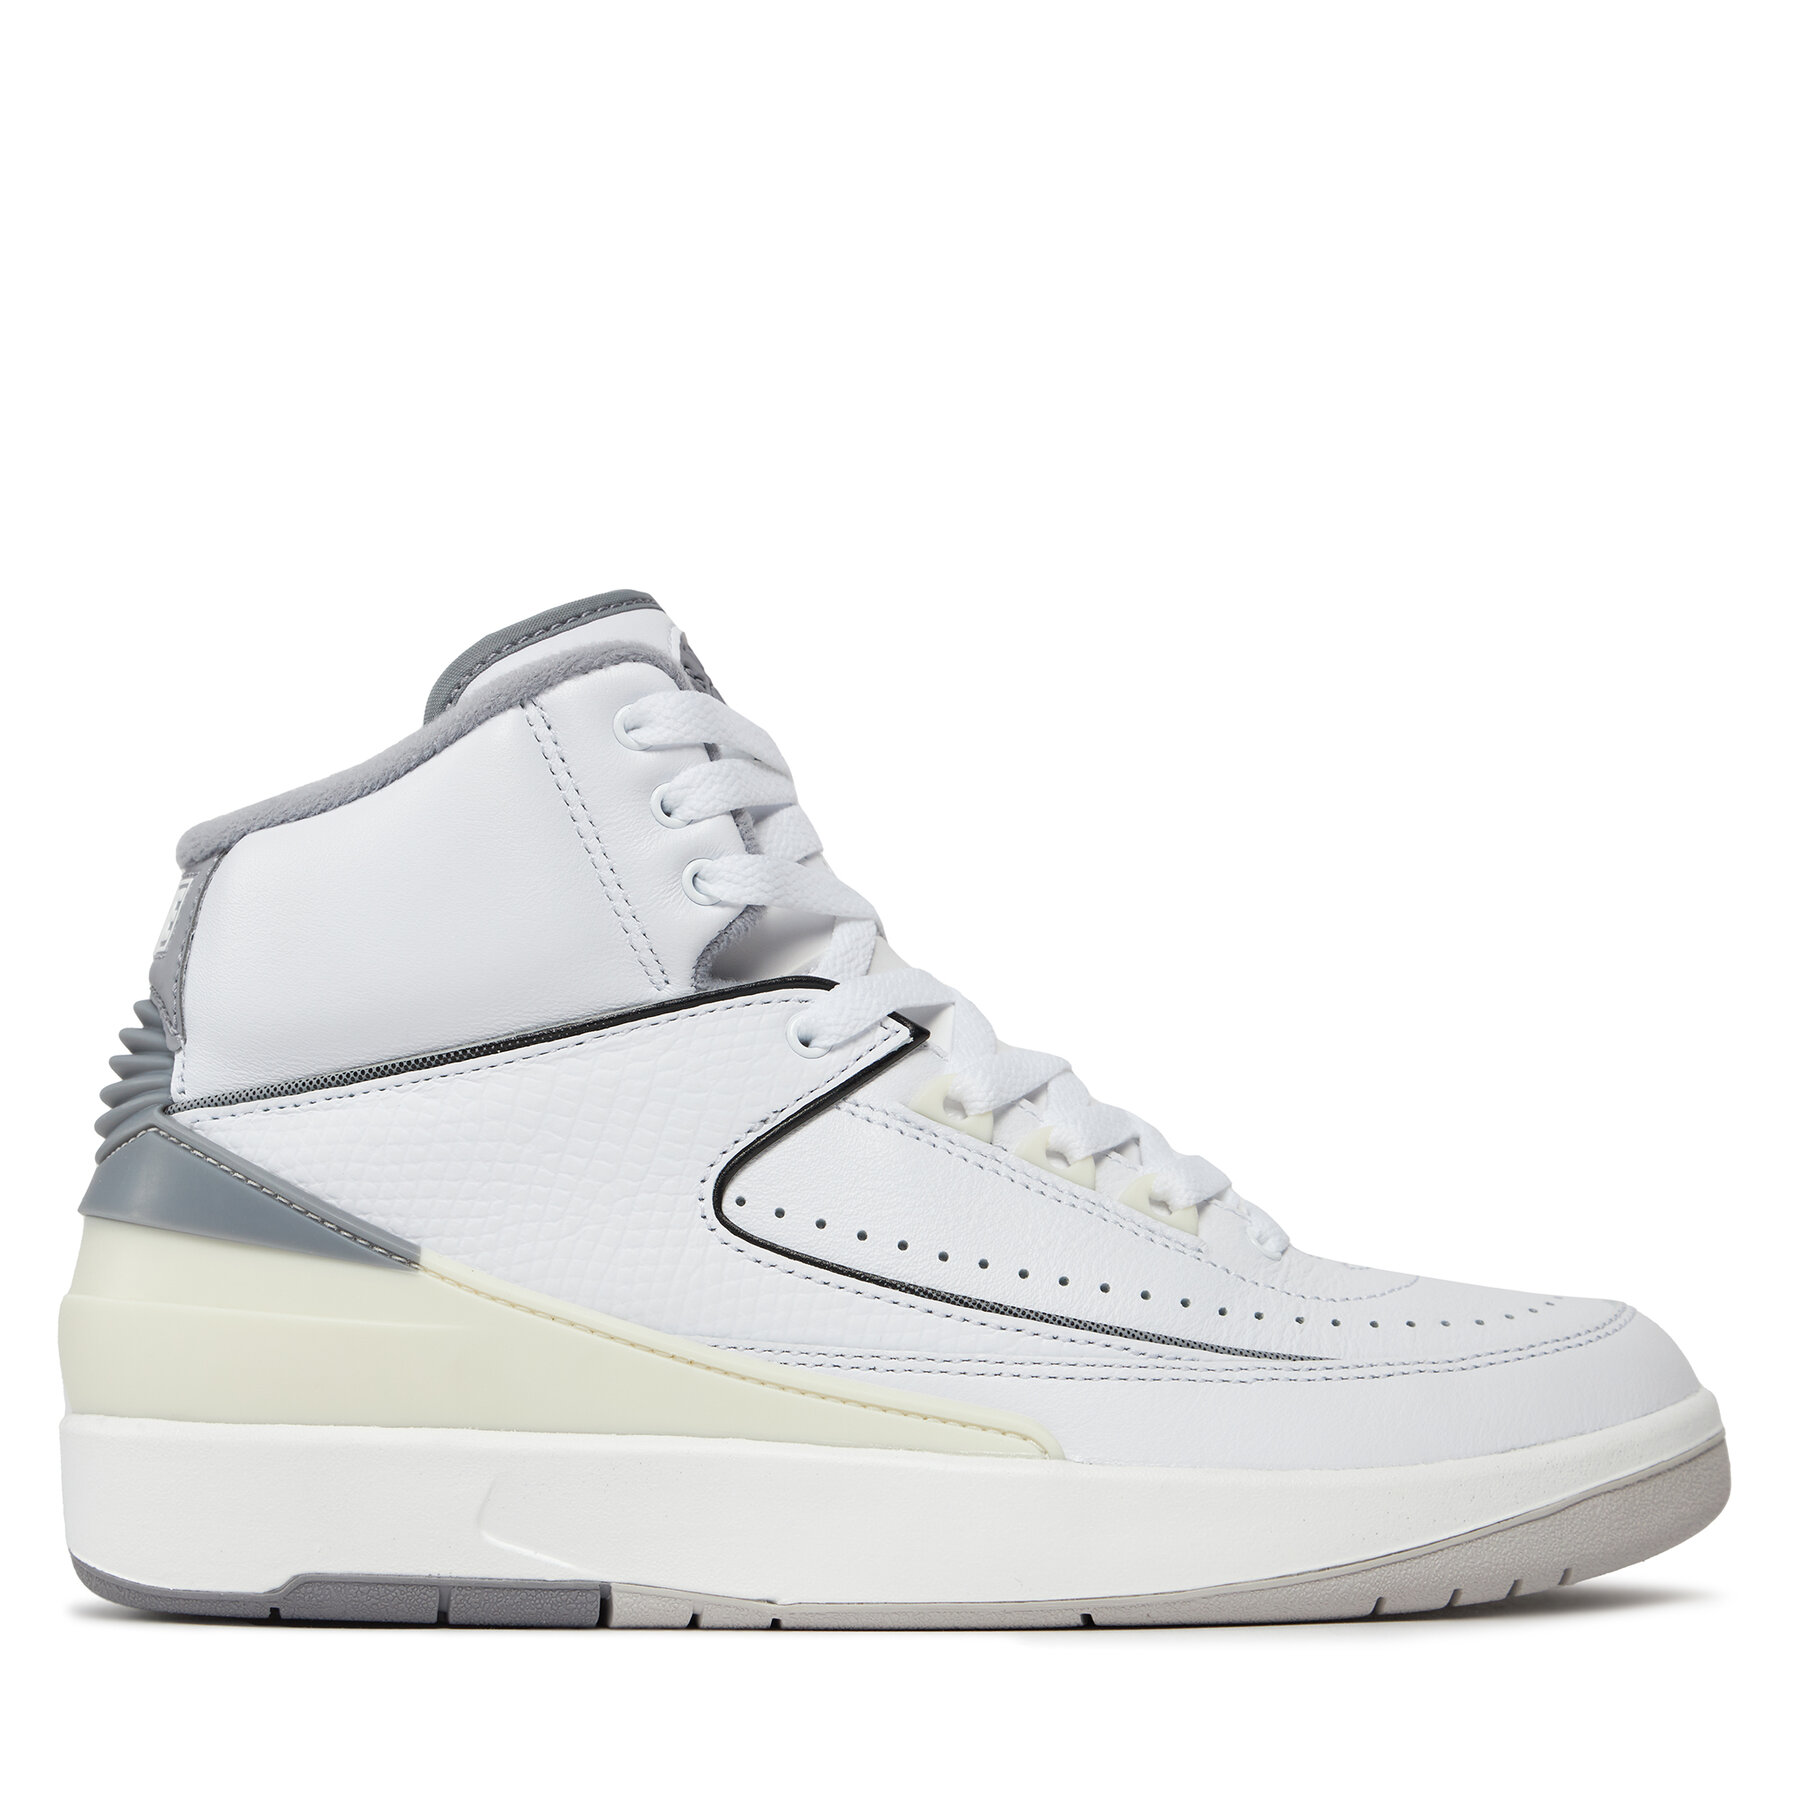 Sneakers Nike Air Jordan 2 Retro DR8884 100 Blanc